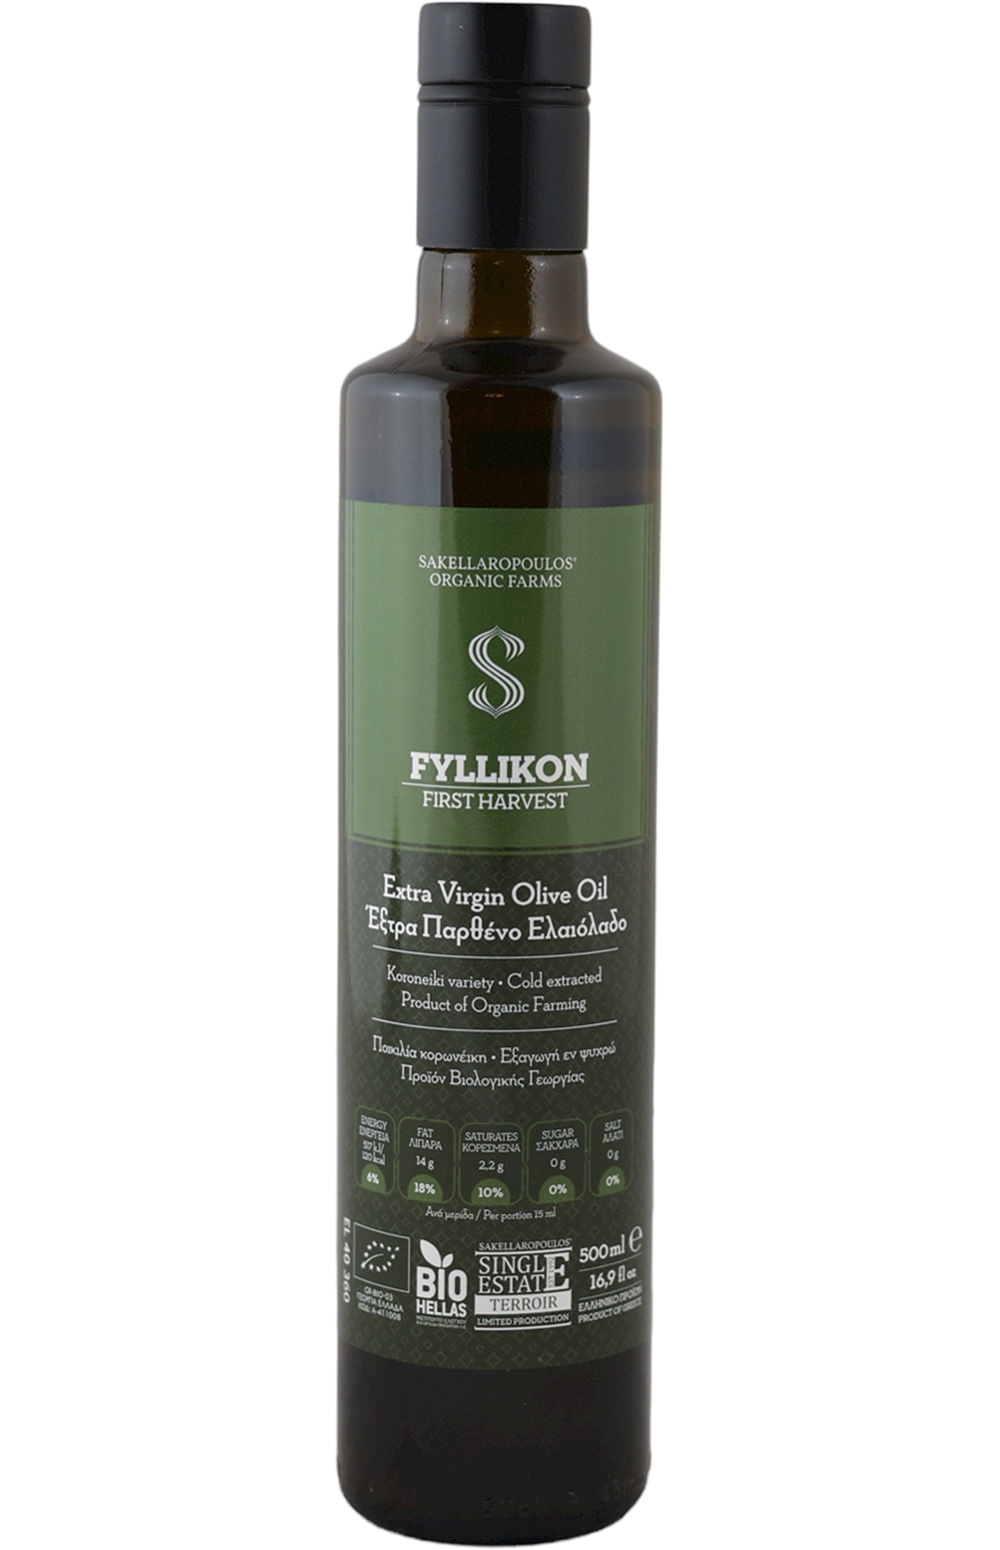 Fyllikon Harvest Organic EVOO Olive Oil